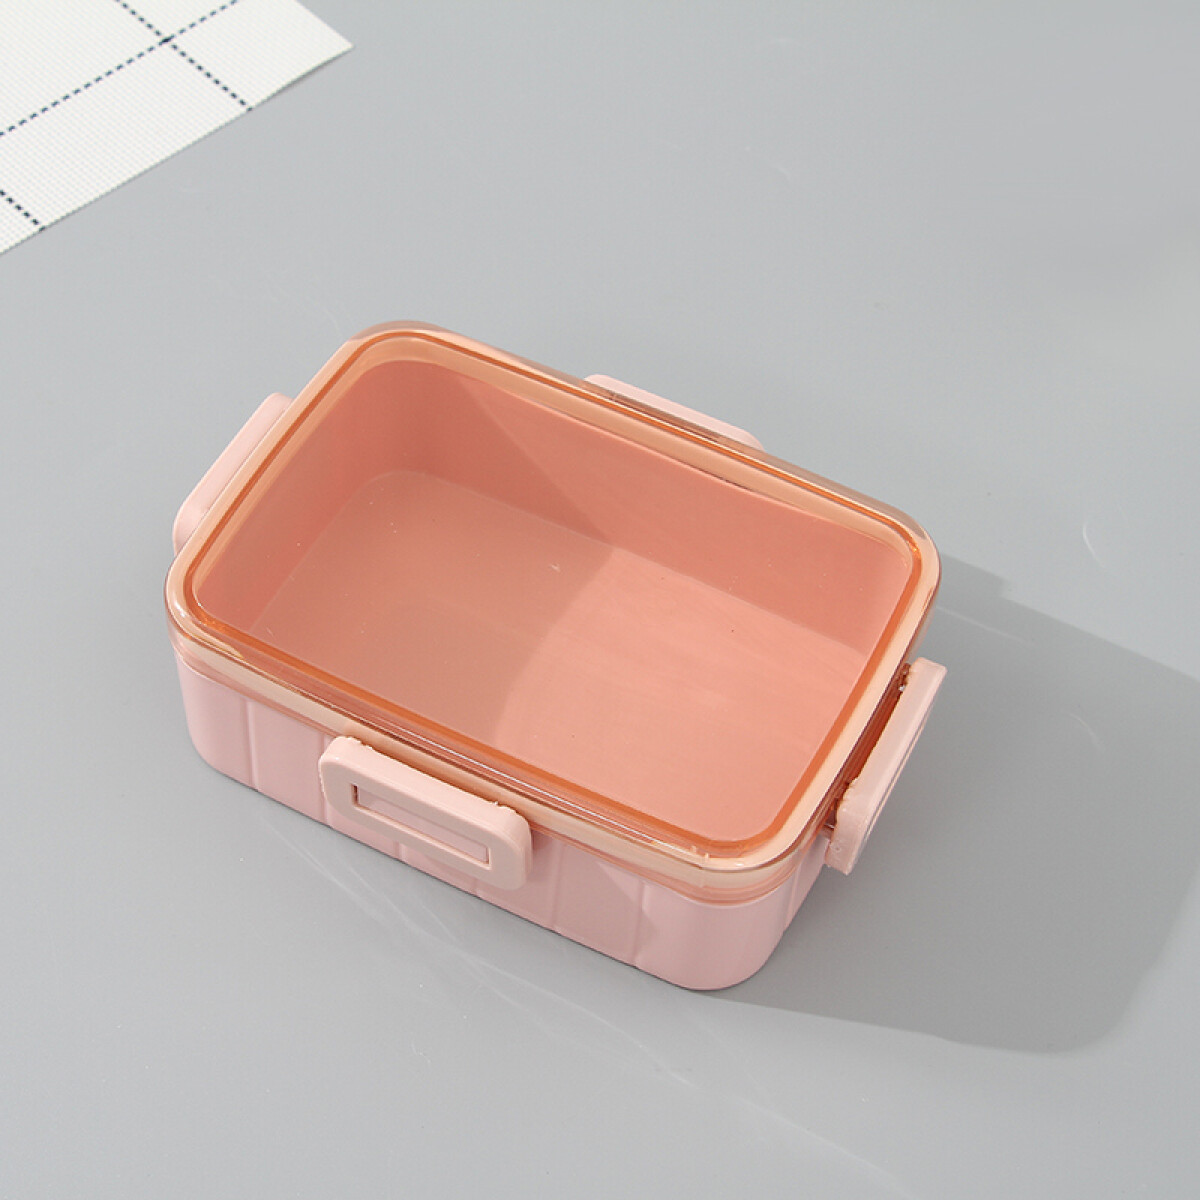 Lunch Box P - Rosa - Unica 